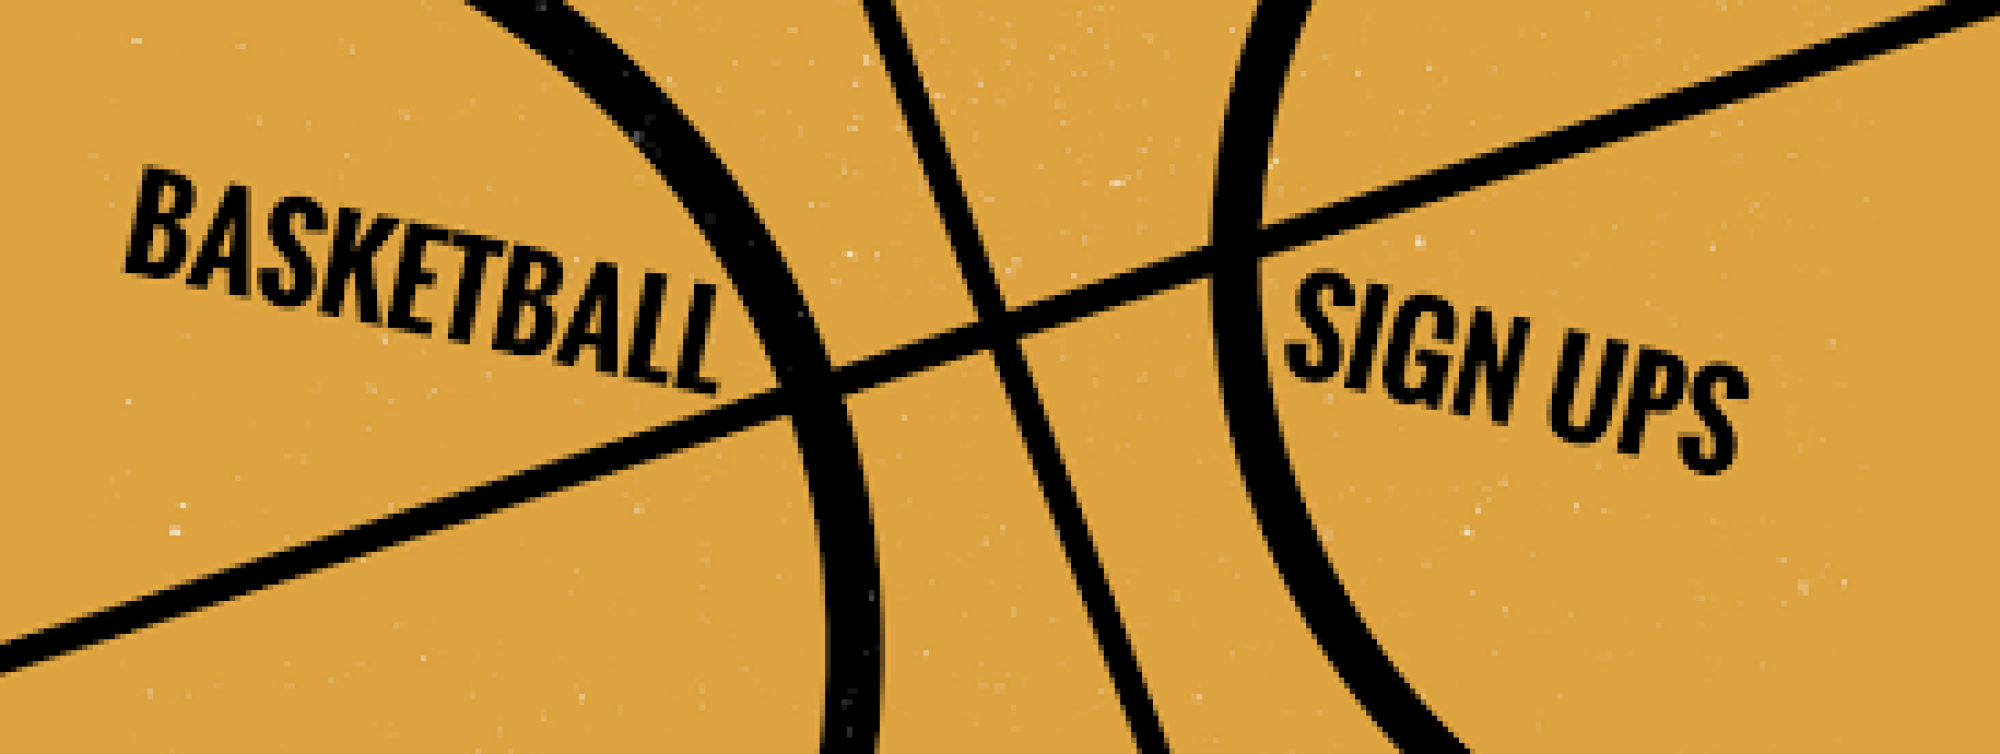 Basketball Sign-Ups